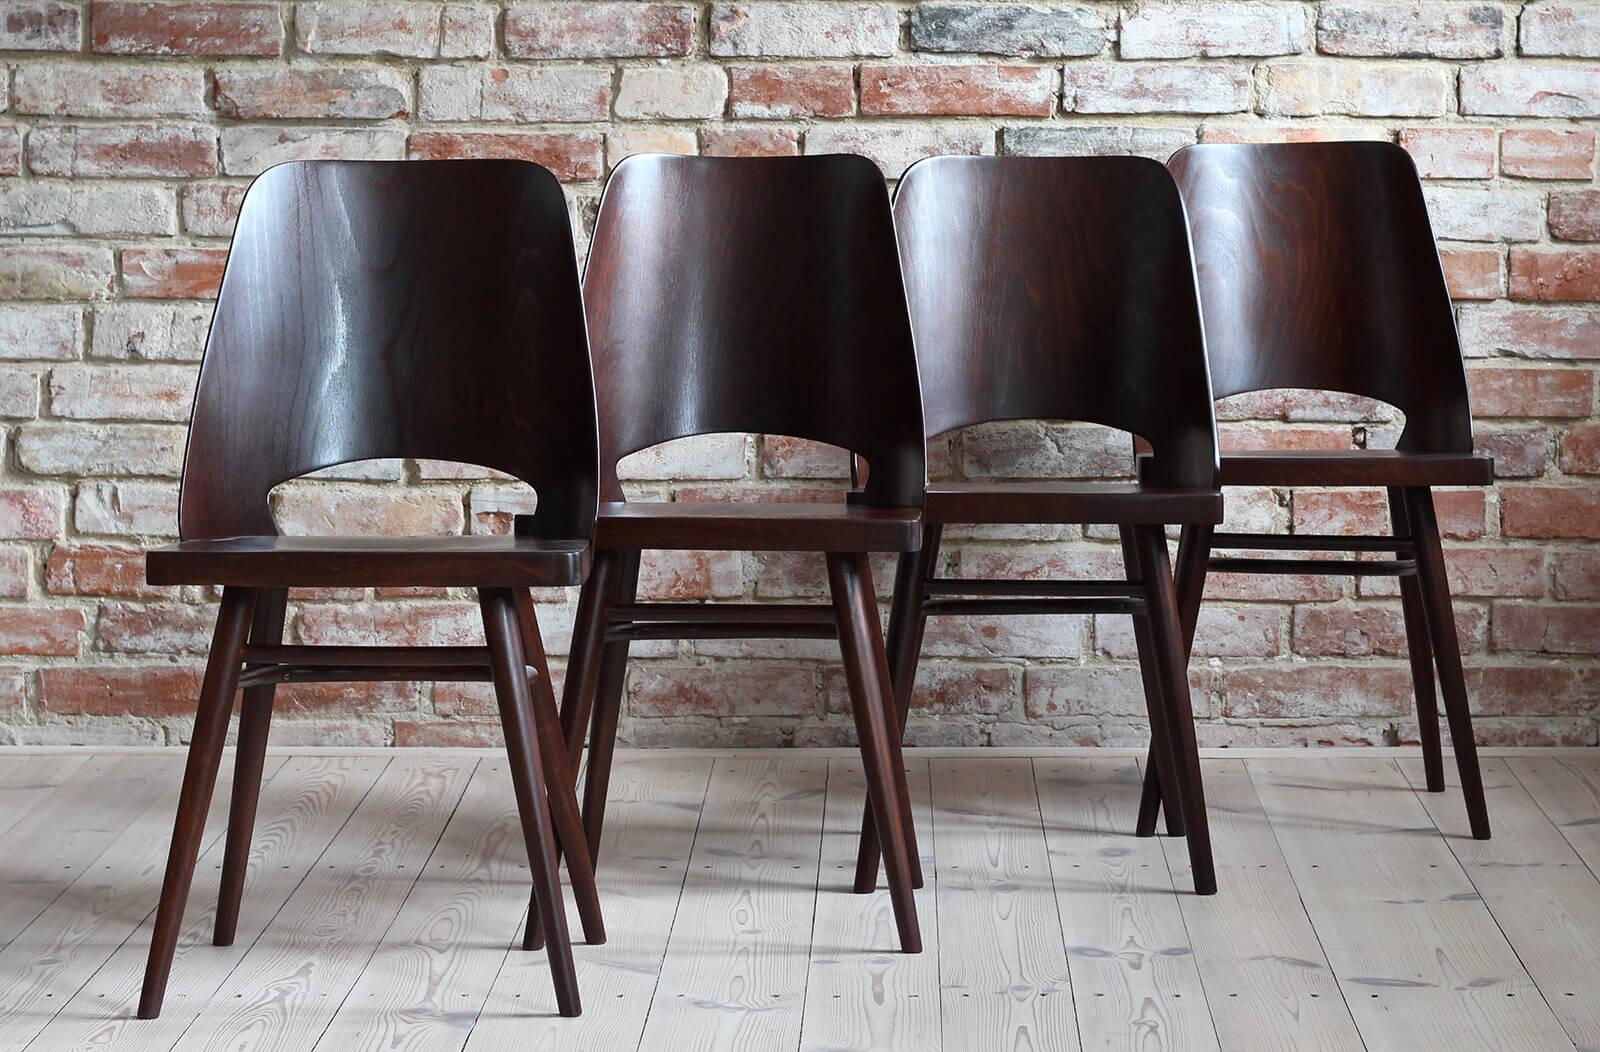 Satz von 4 Stühlen, entworfen von Radomir Hofman für TON, Modell 514. Die Stühle sind nach kompletter Renovierung gereinigt, poliert und mit hochwertigem Satine-Lack überzogen worden, der das Holz schützt. Sie sind mit Buchenholz furniert. Schönes